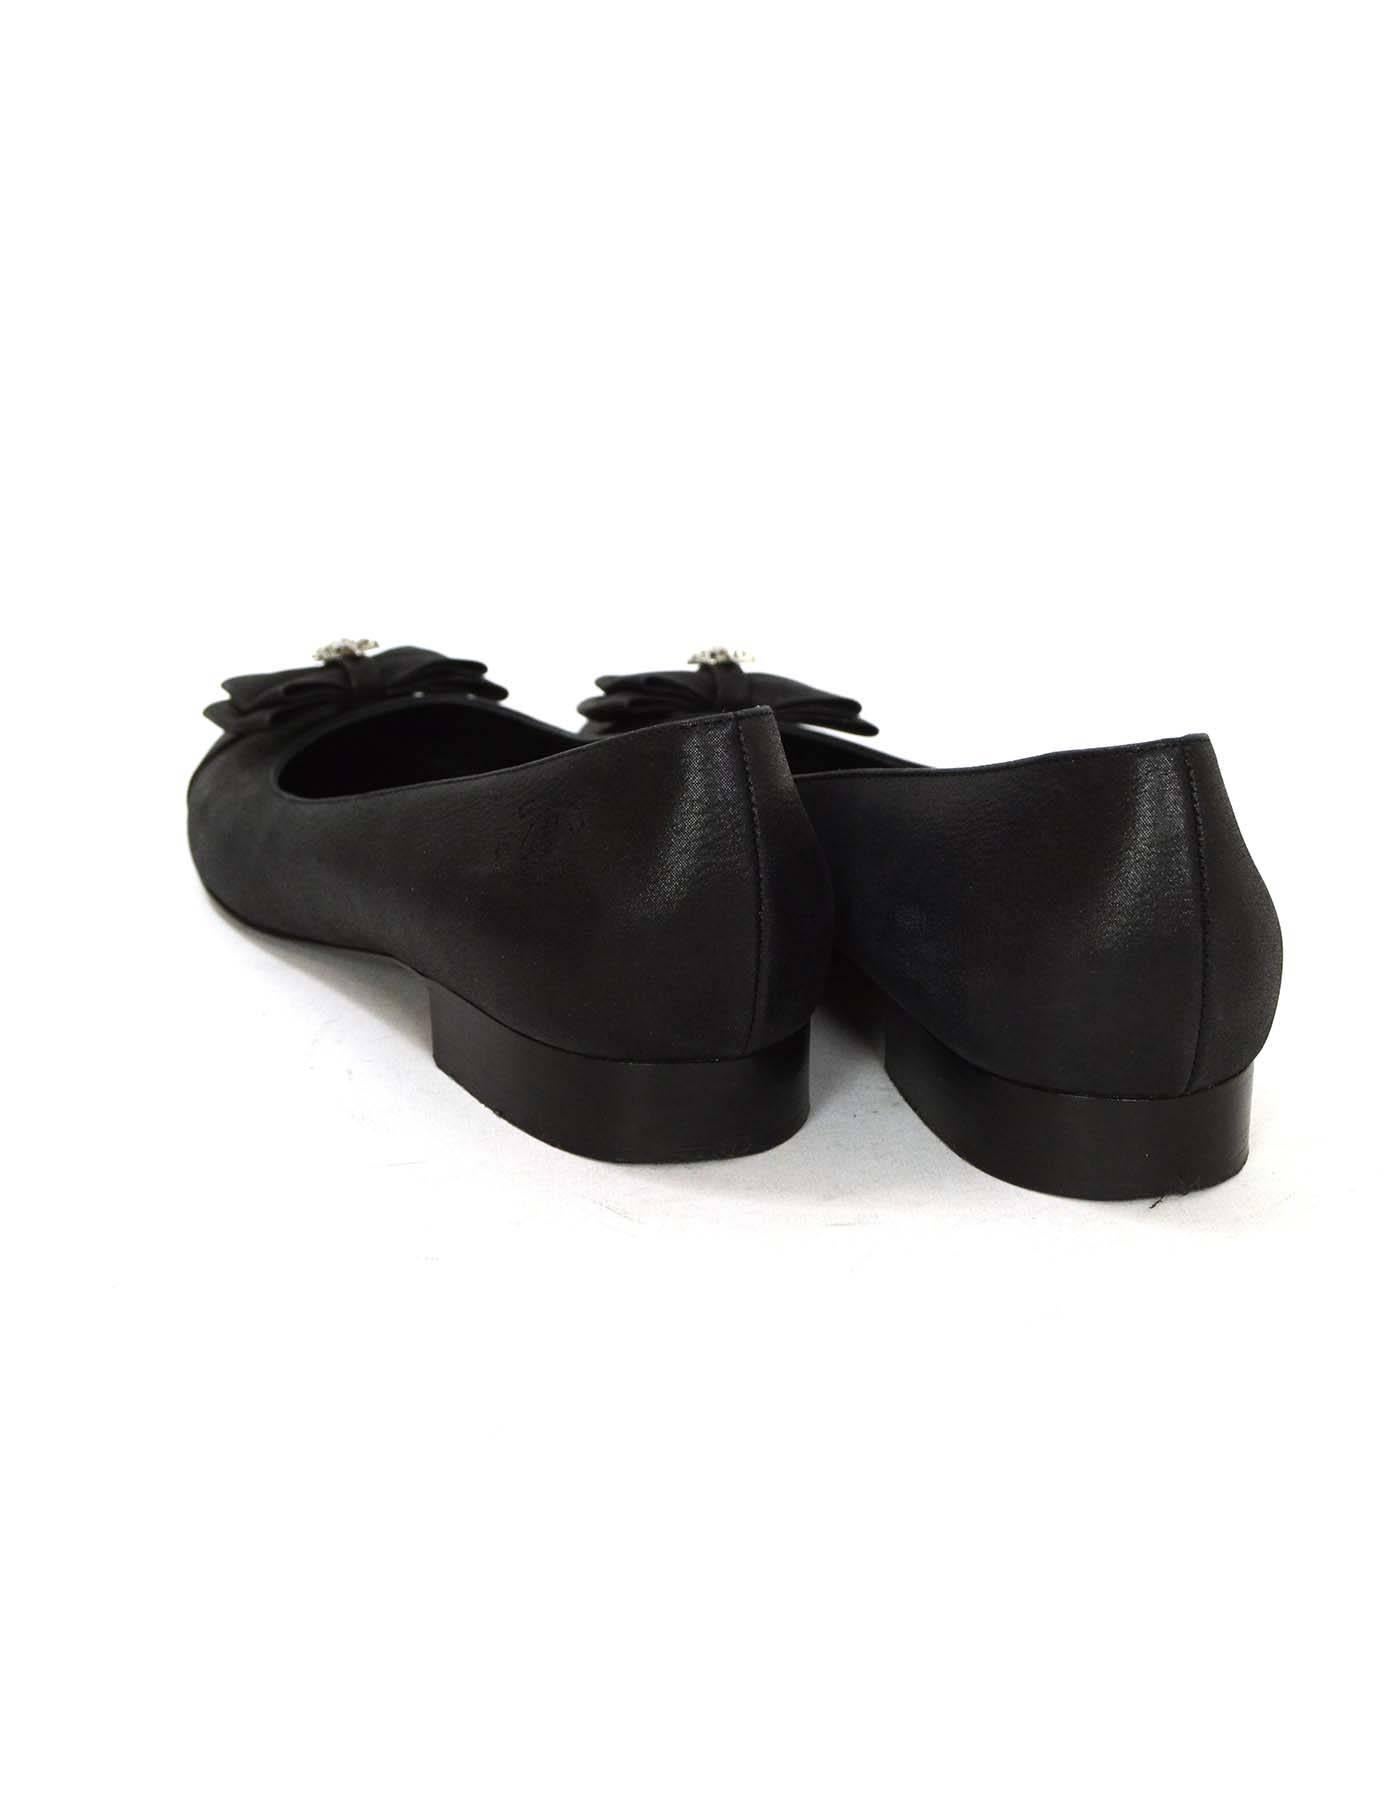 Chanel Black Iridescent Calfskin Flats sz 38 1